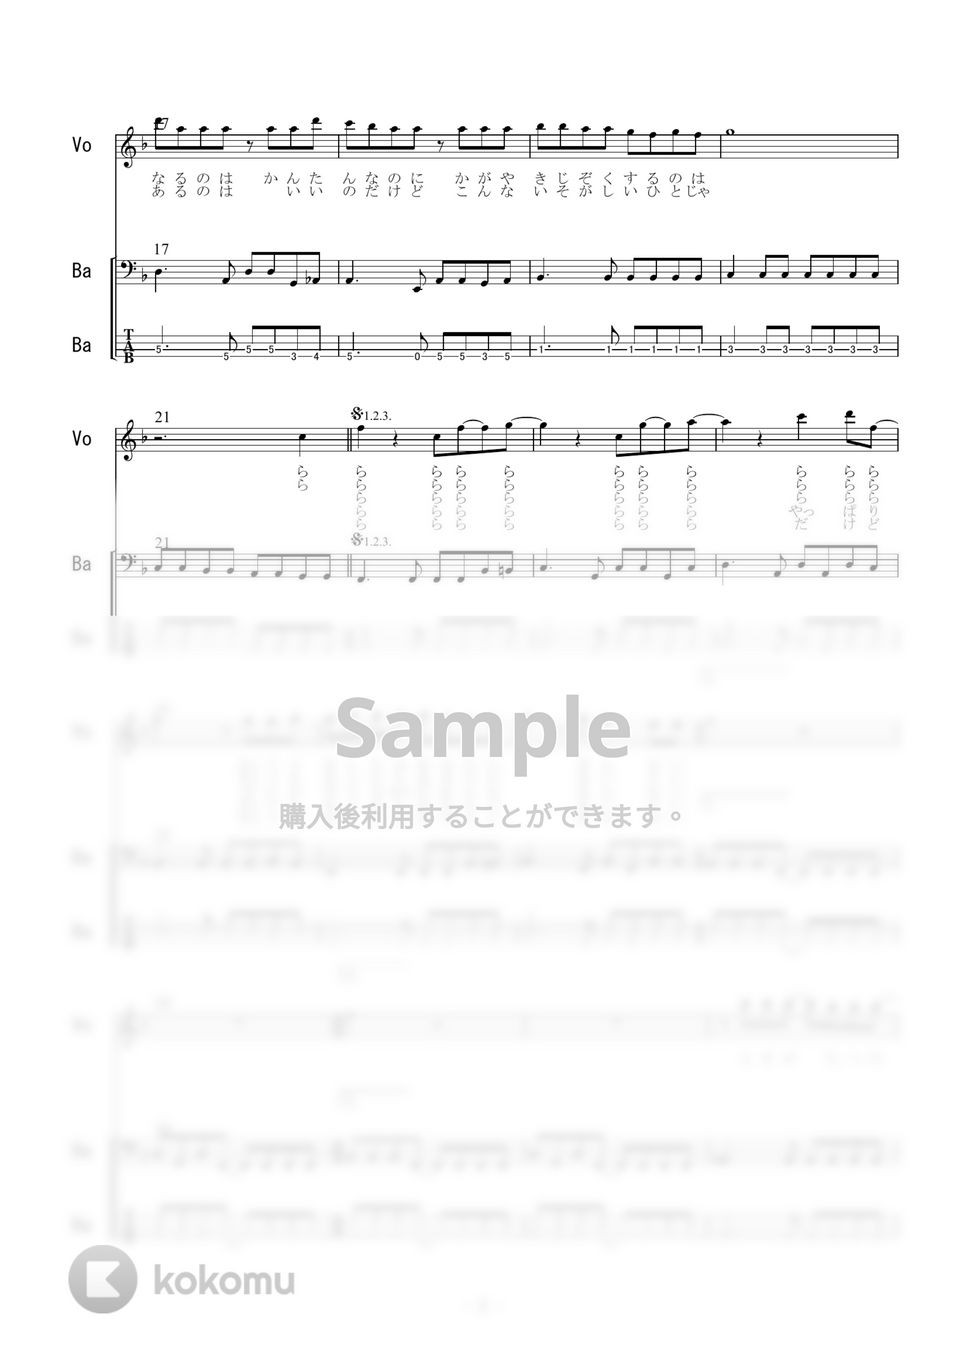 大黒摩季 - ら・ら・ら (ベース) by 二次元楽譜製作所